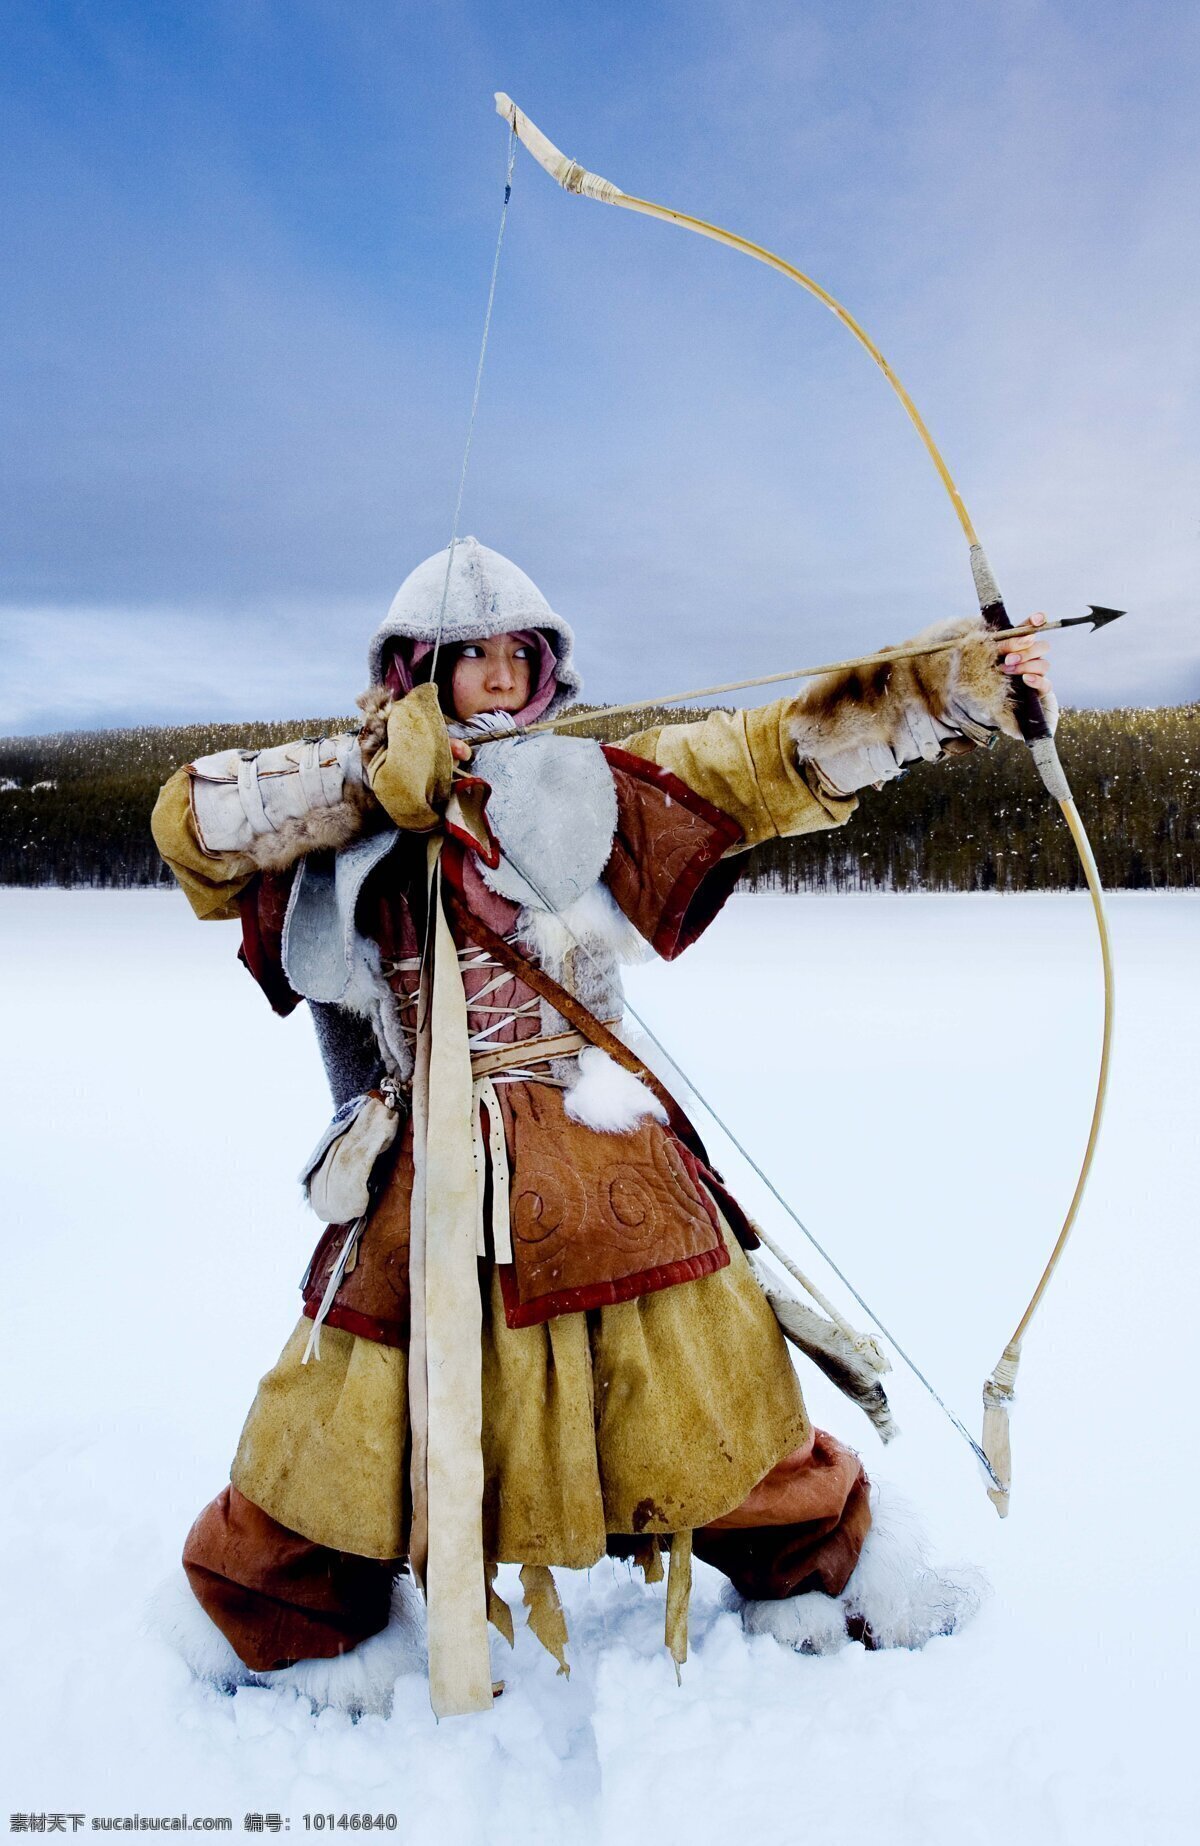 射箭 女性 雪地 模特 冬季时尚 弓 女性女人 人物图库